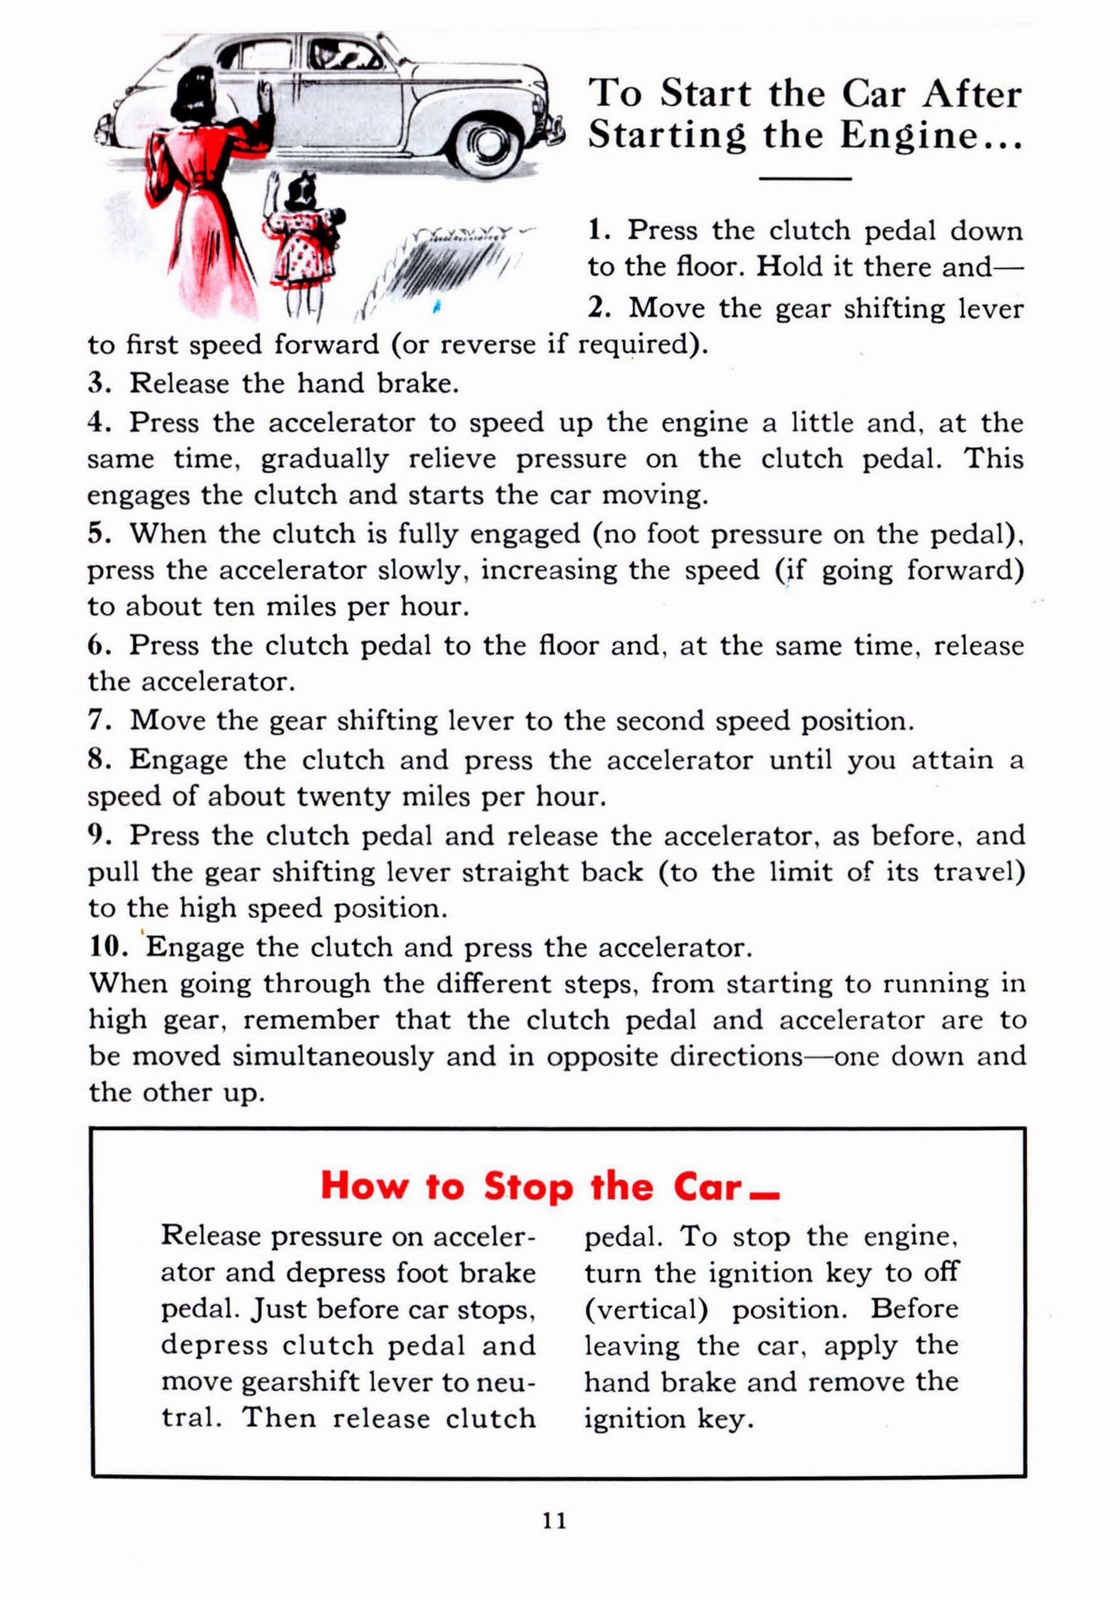 n_1941 Dodge Owners Manual-11.jpg